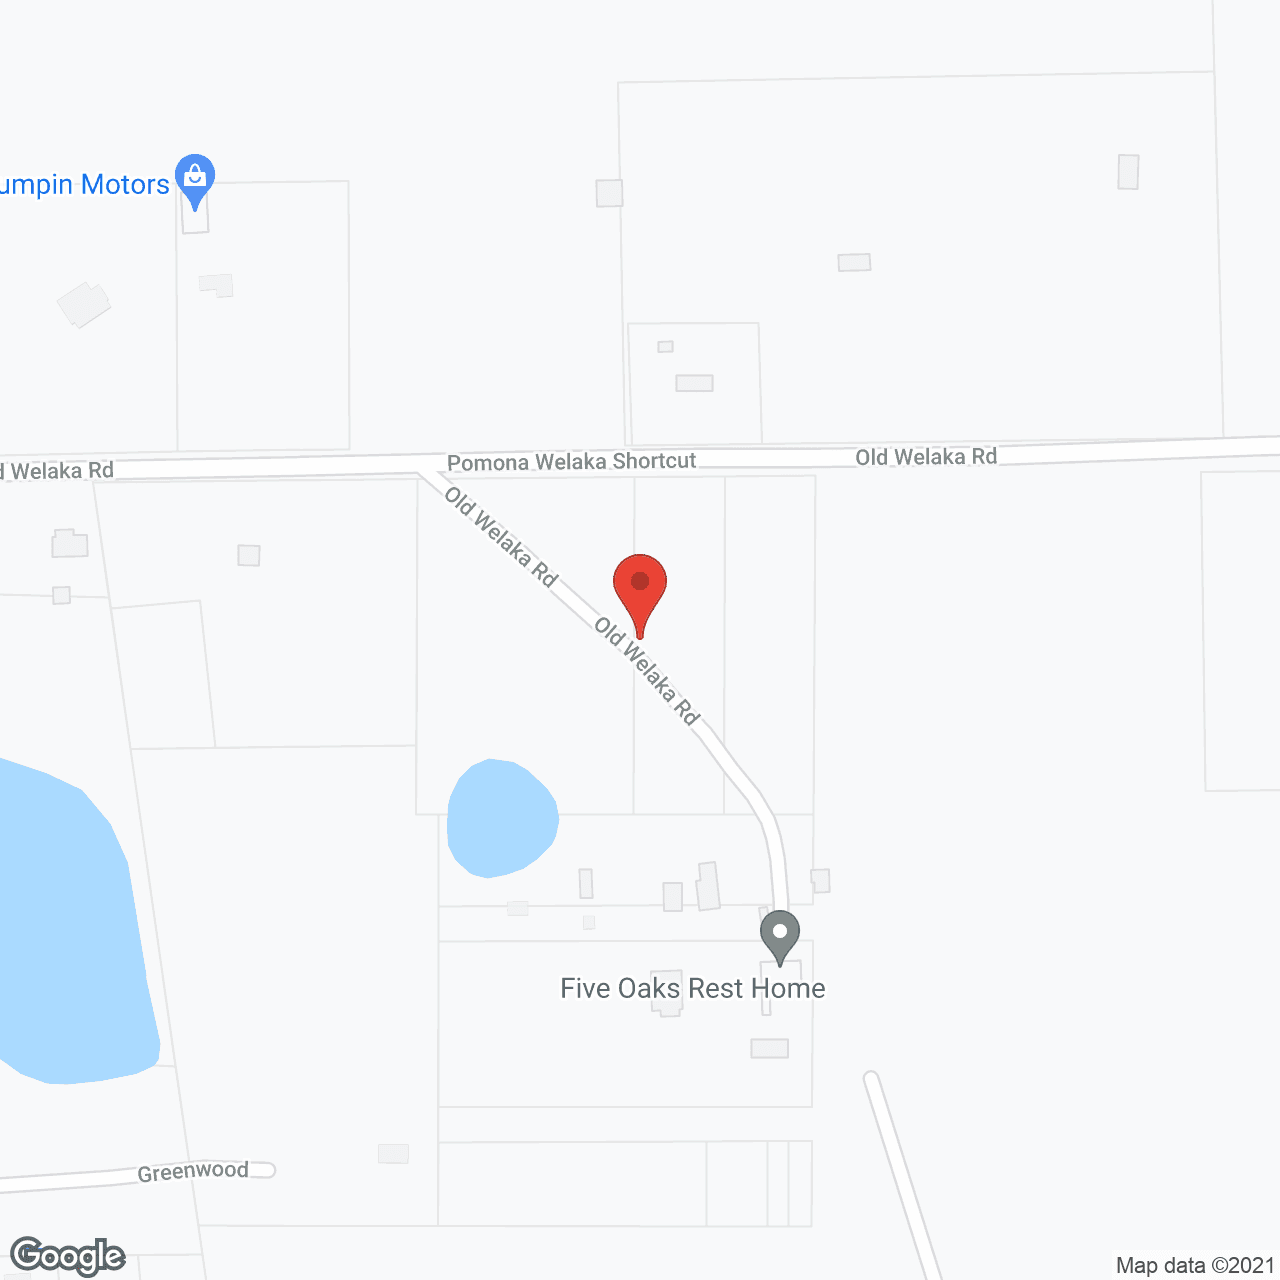 Five Oaks Rest Home in google map